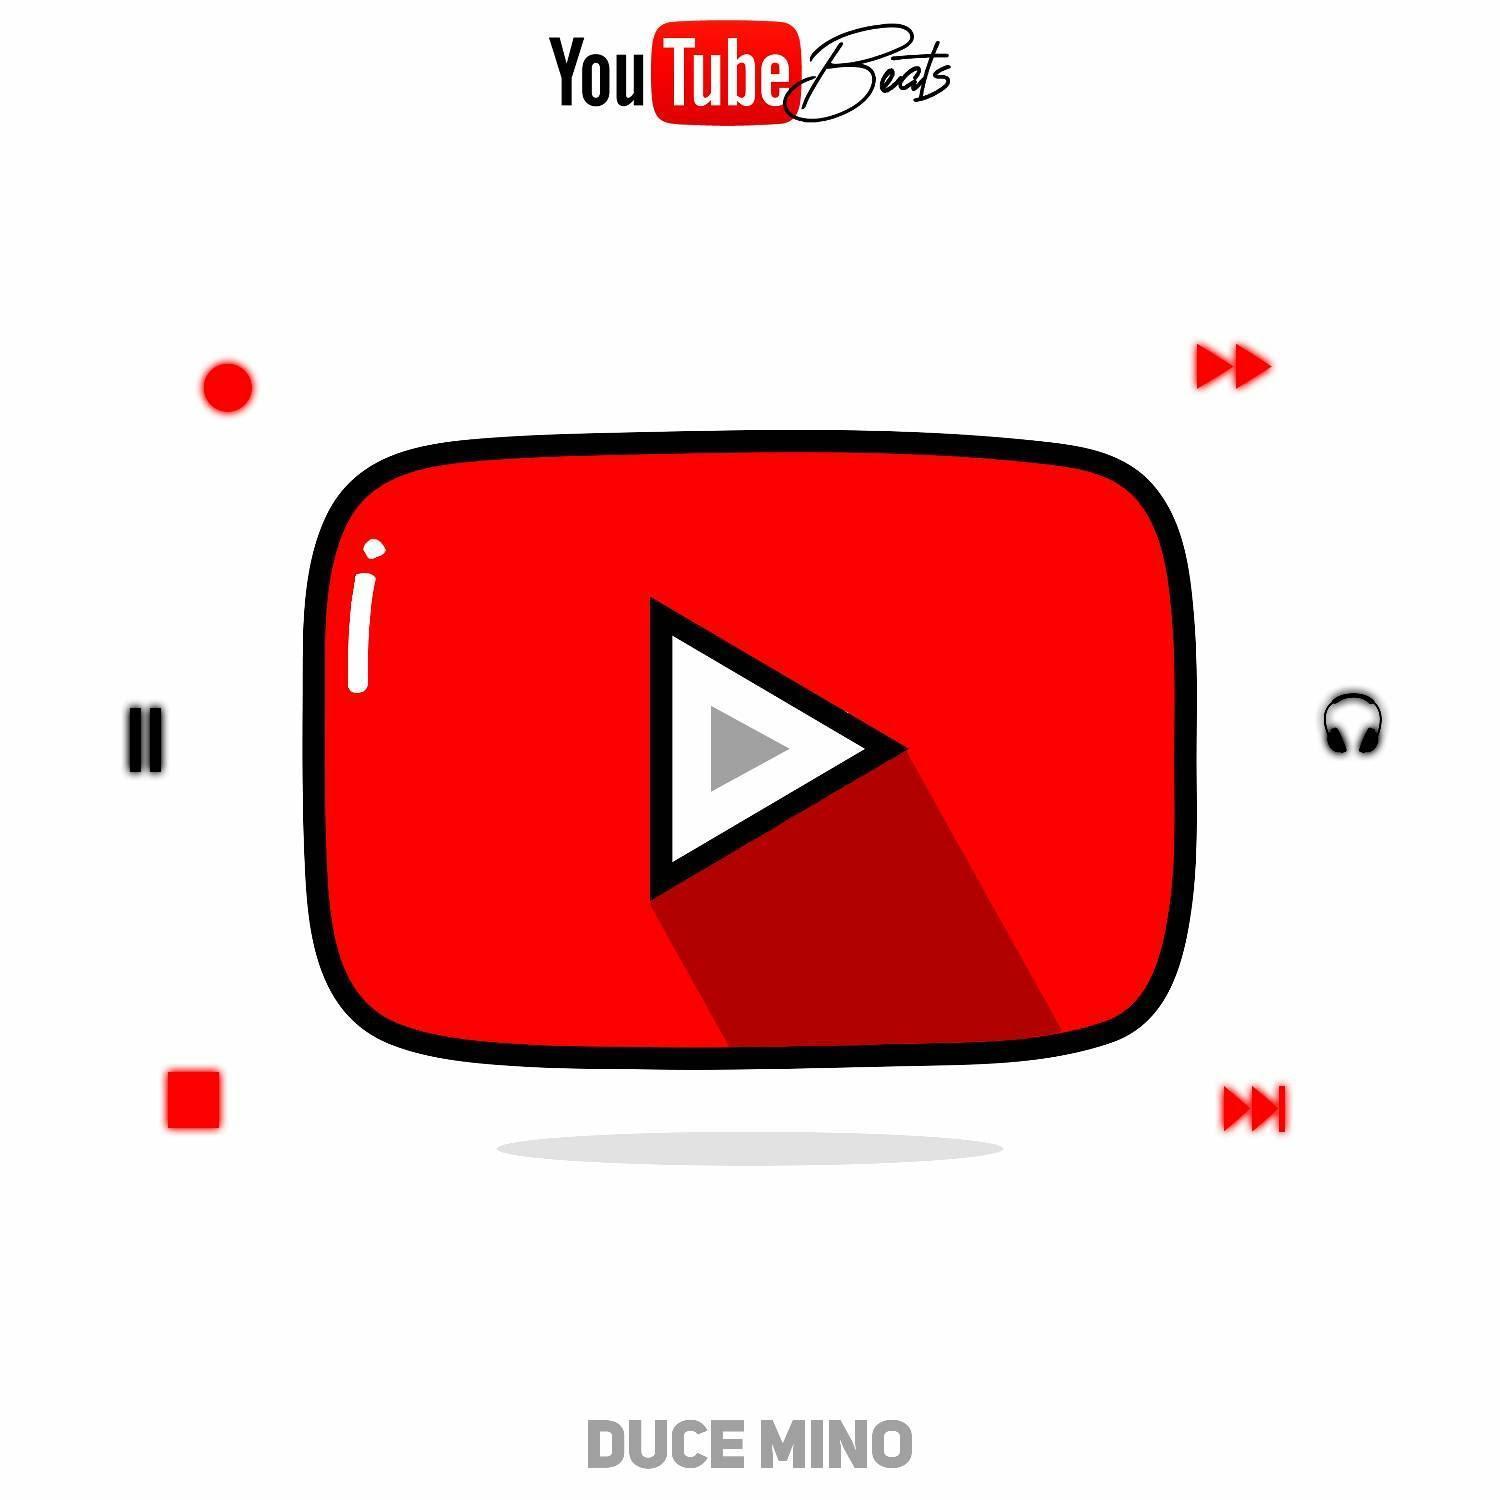 Duce Mino – Youtube Beats